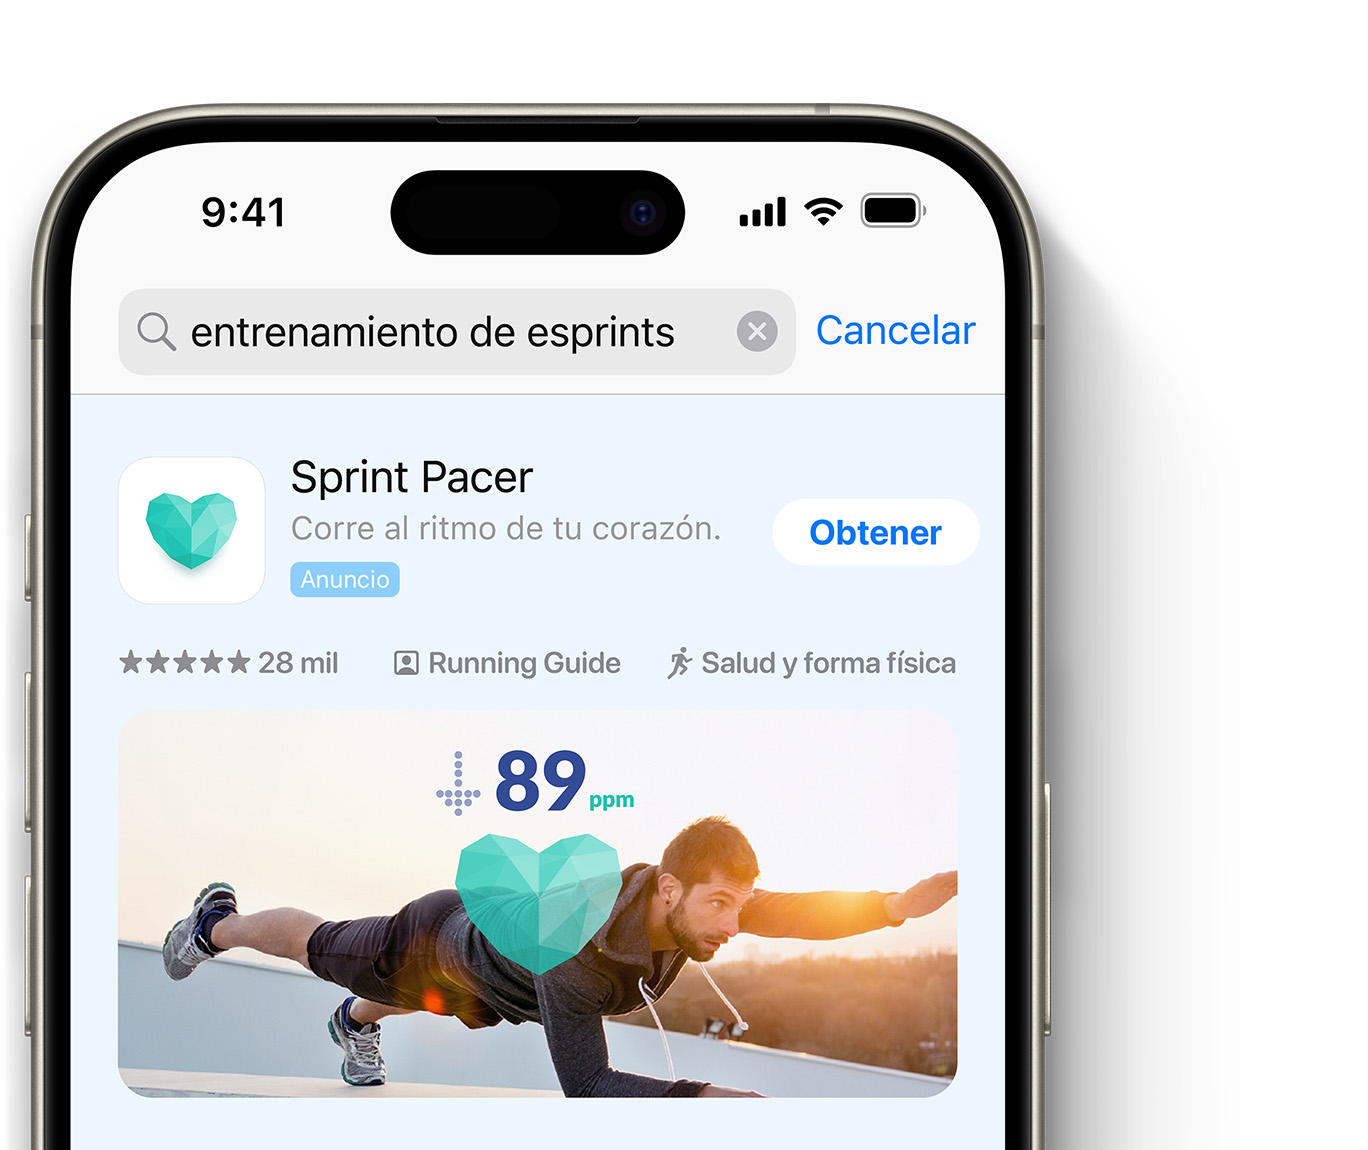 Aparecerá un anuncio de la app Sprint Pacer en la parte superior de los resultados de búsqueda del App Store. 